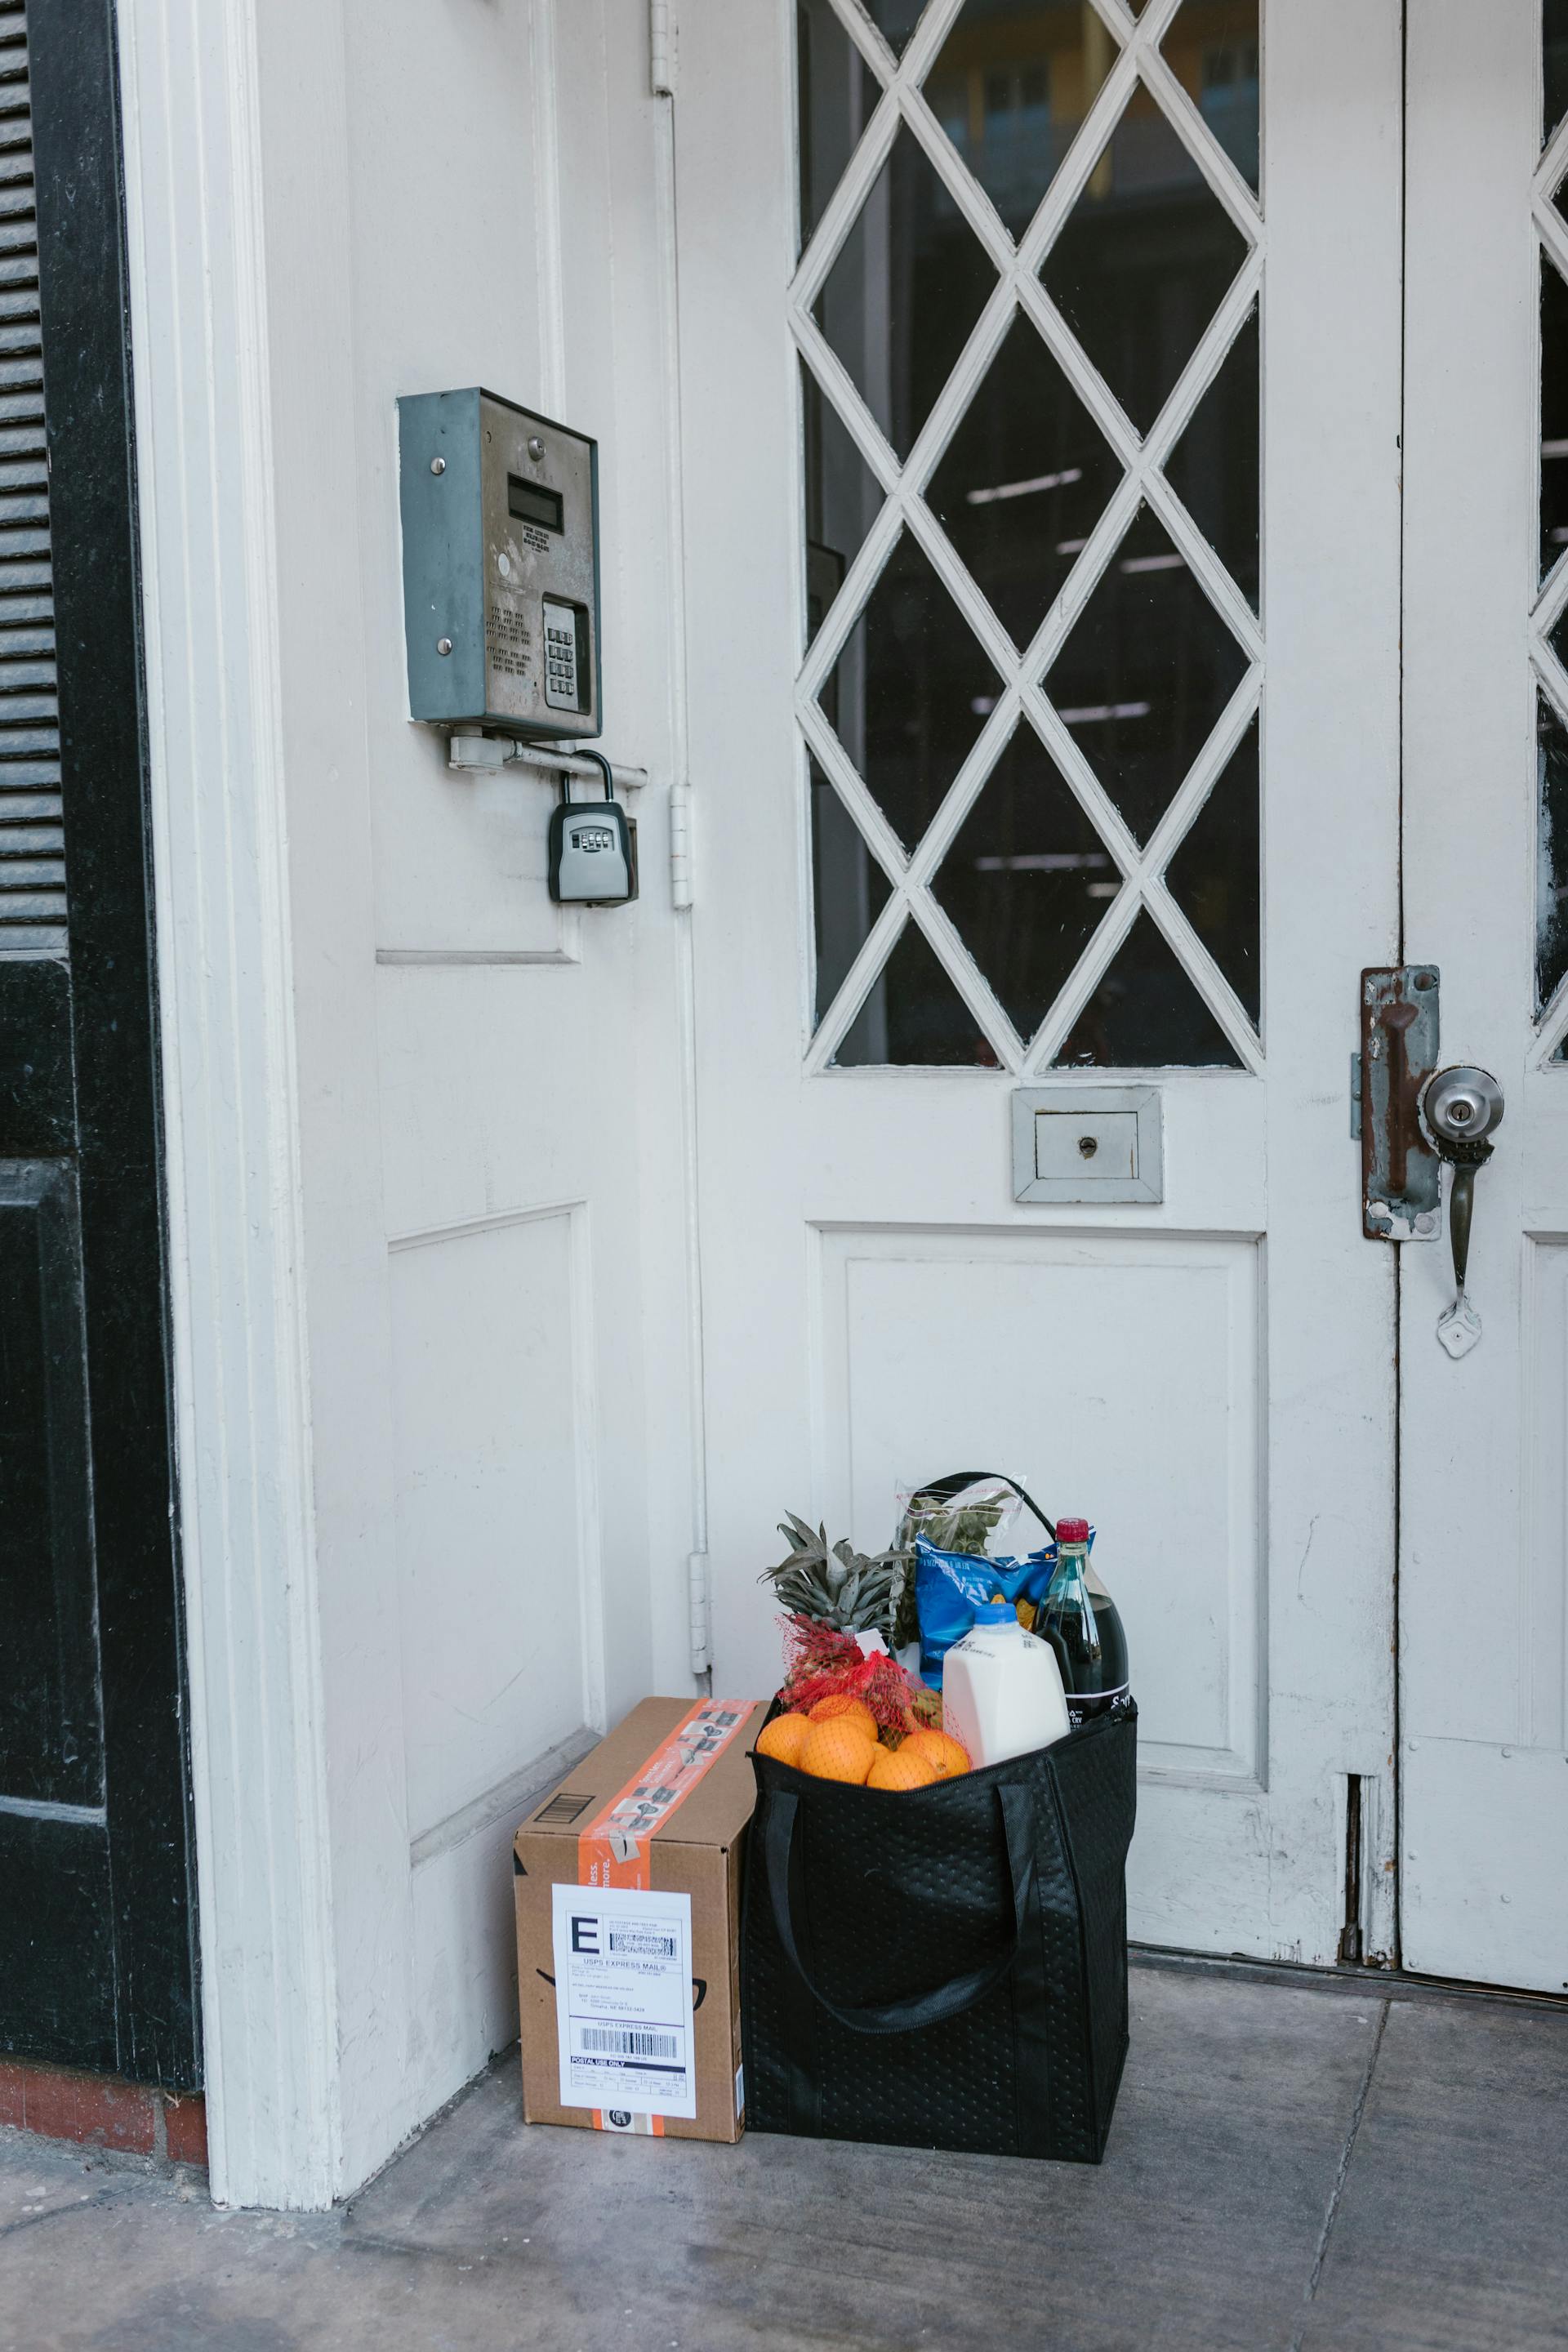 Paquets de nourriture à l'entrée de la porte | Source : Pexels